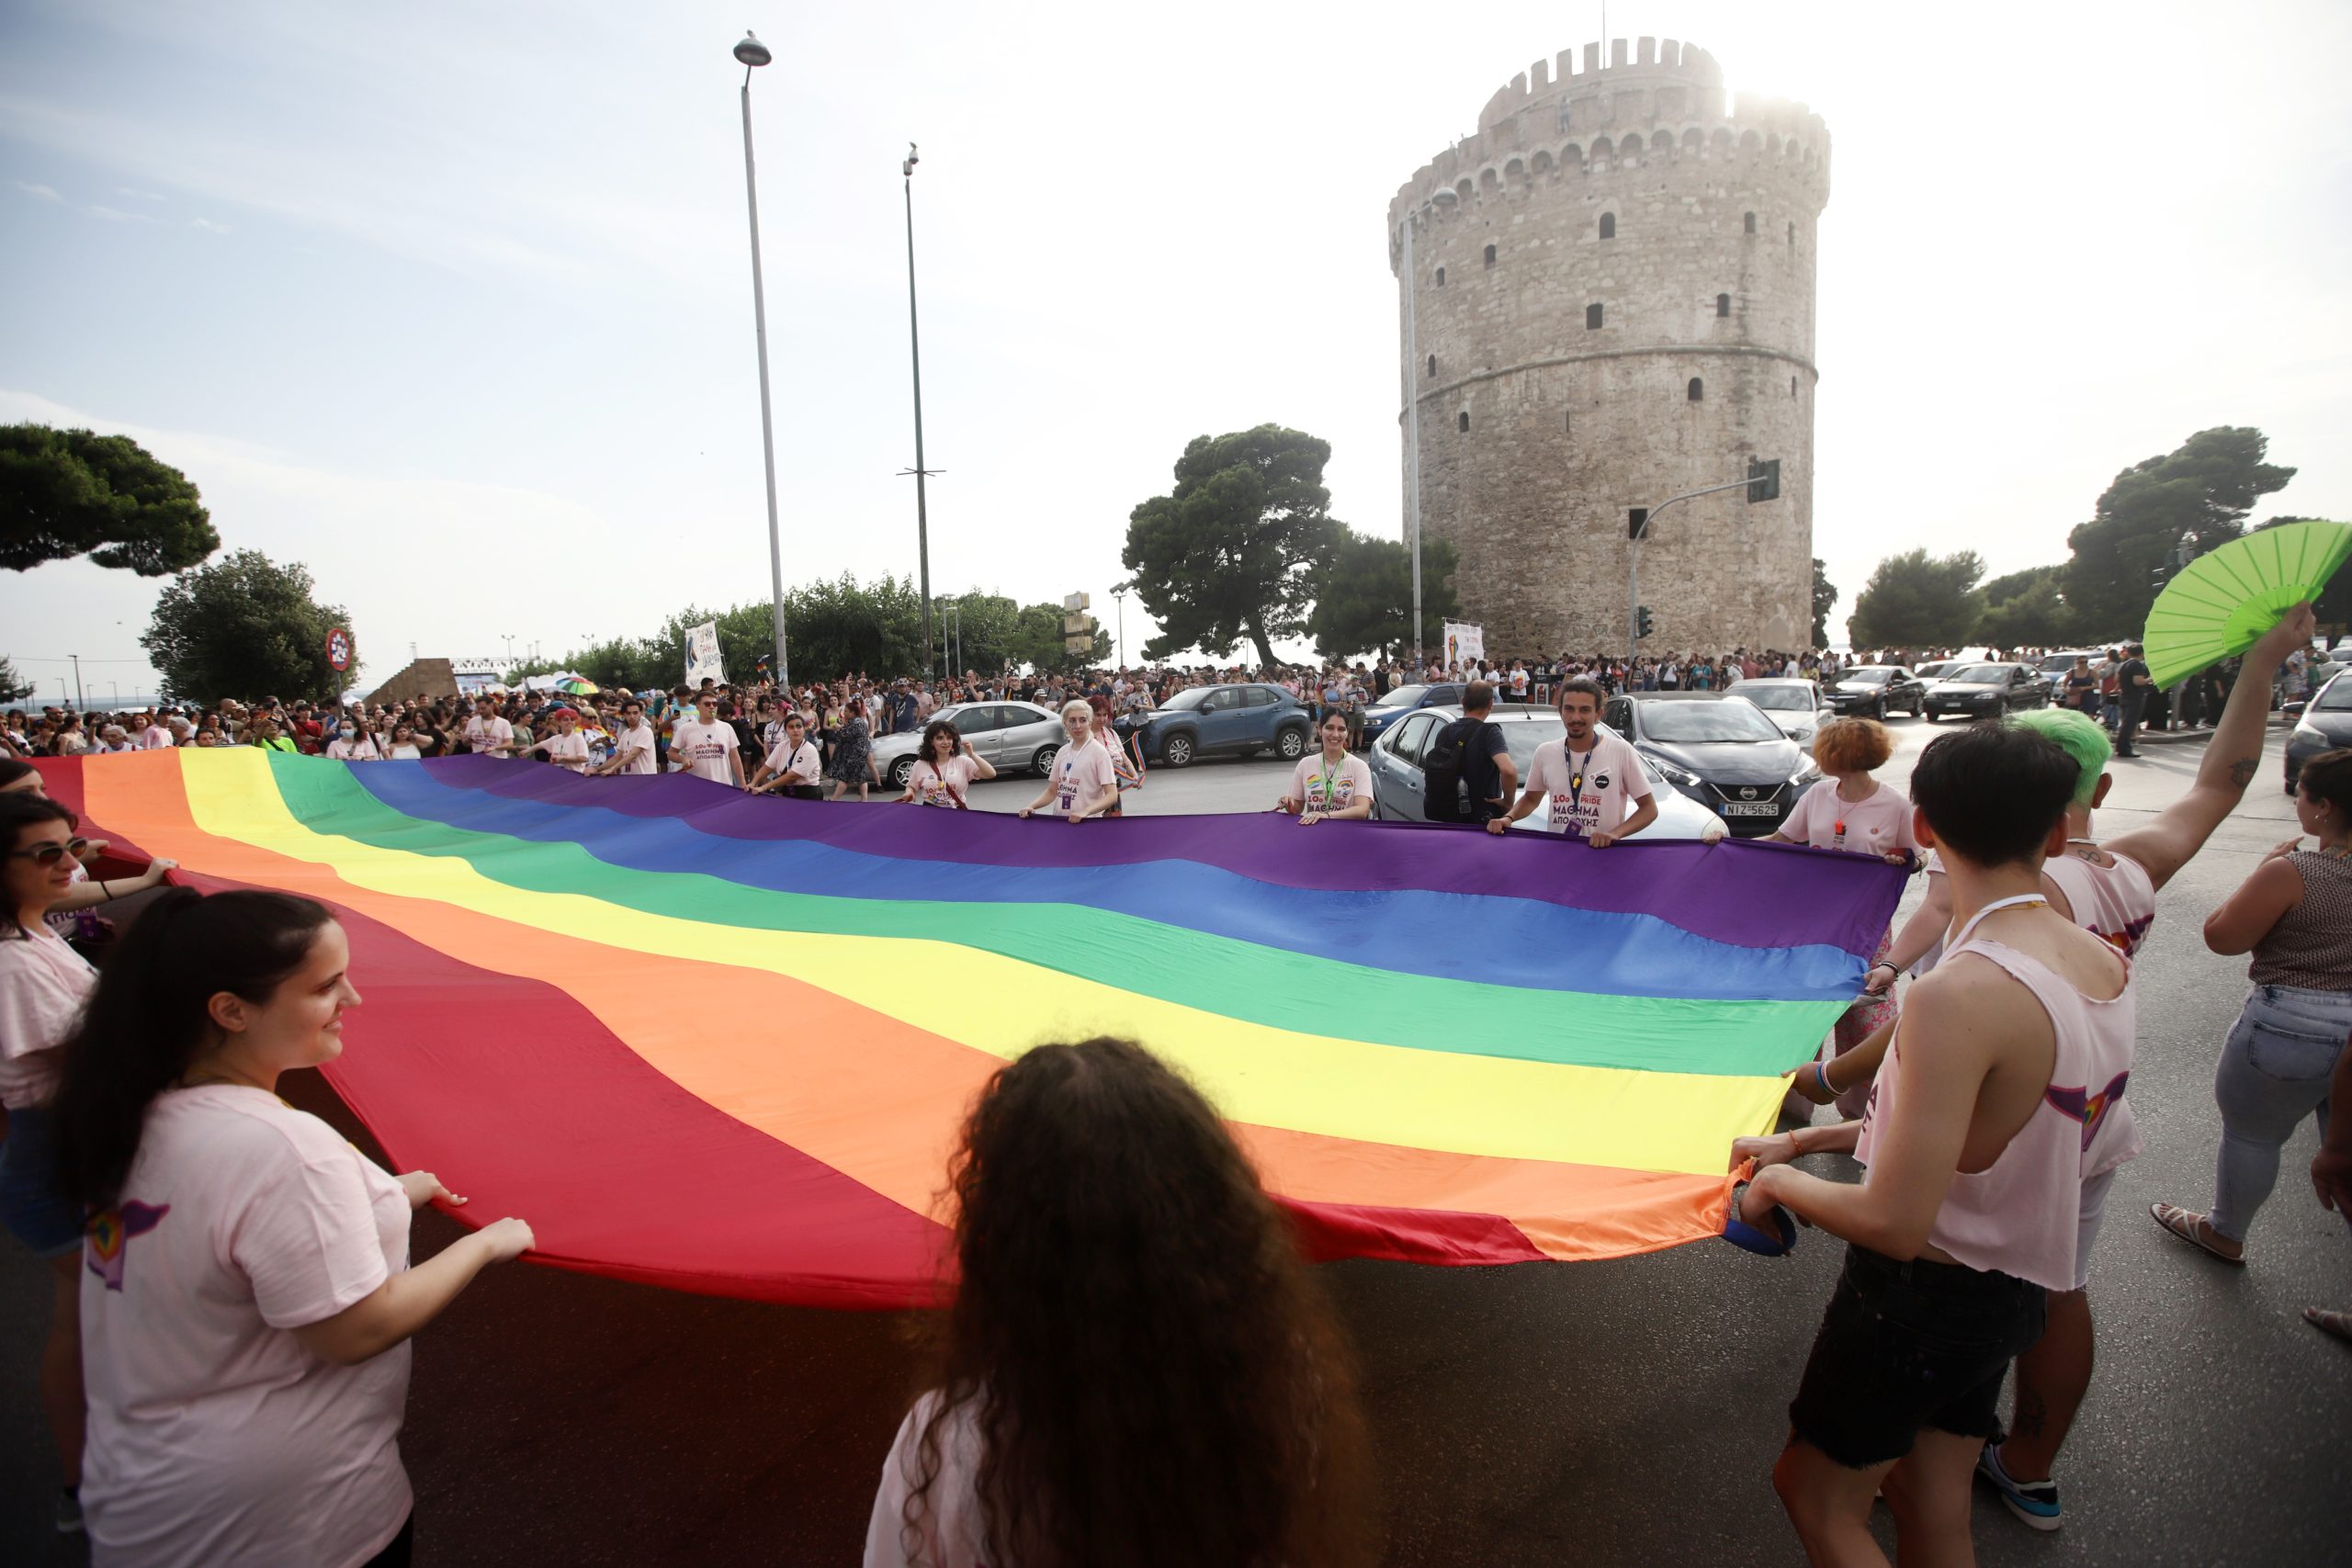 Θεσσαλονίκη: “Δεν θα το αφήσουμε έτσι”, λέει ένα από τα θύματα